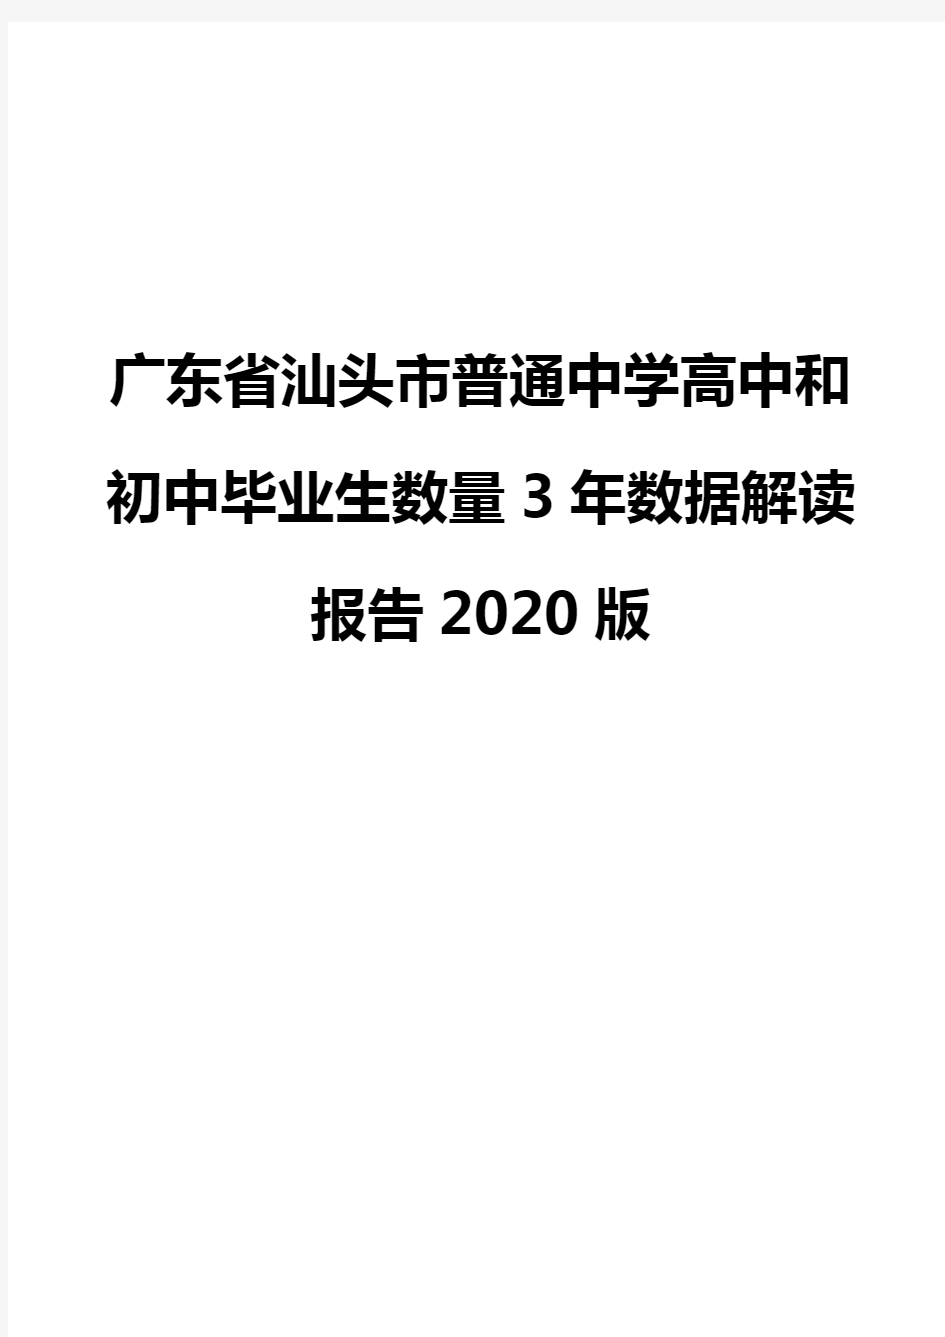 广东省汕头市普通中学高中和初中毕业生数量3年数据解读报告2020版